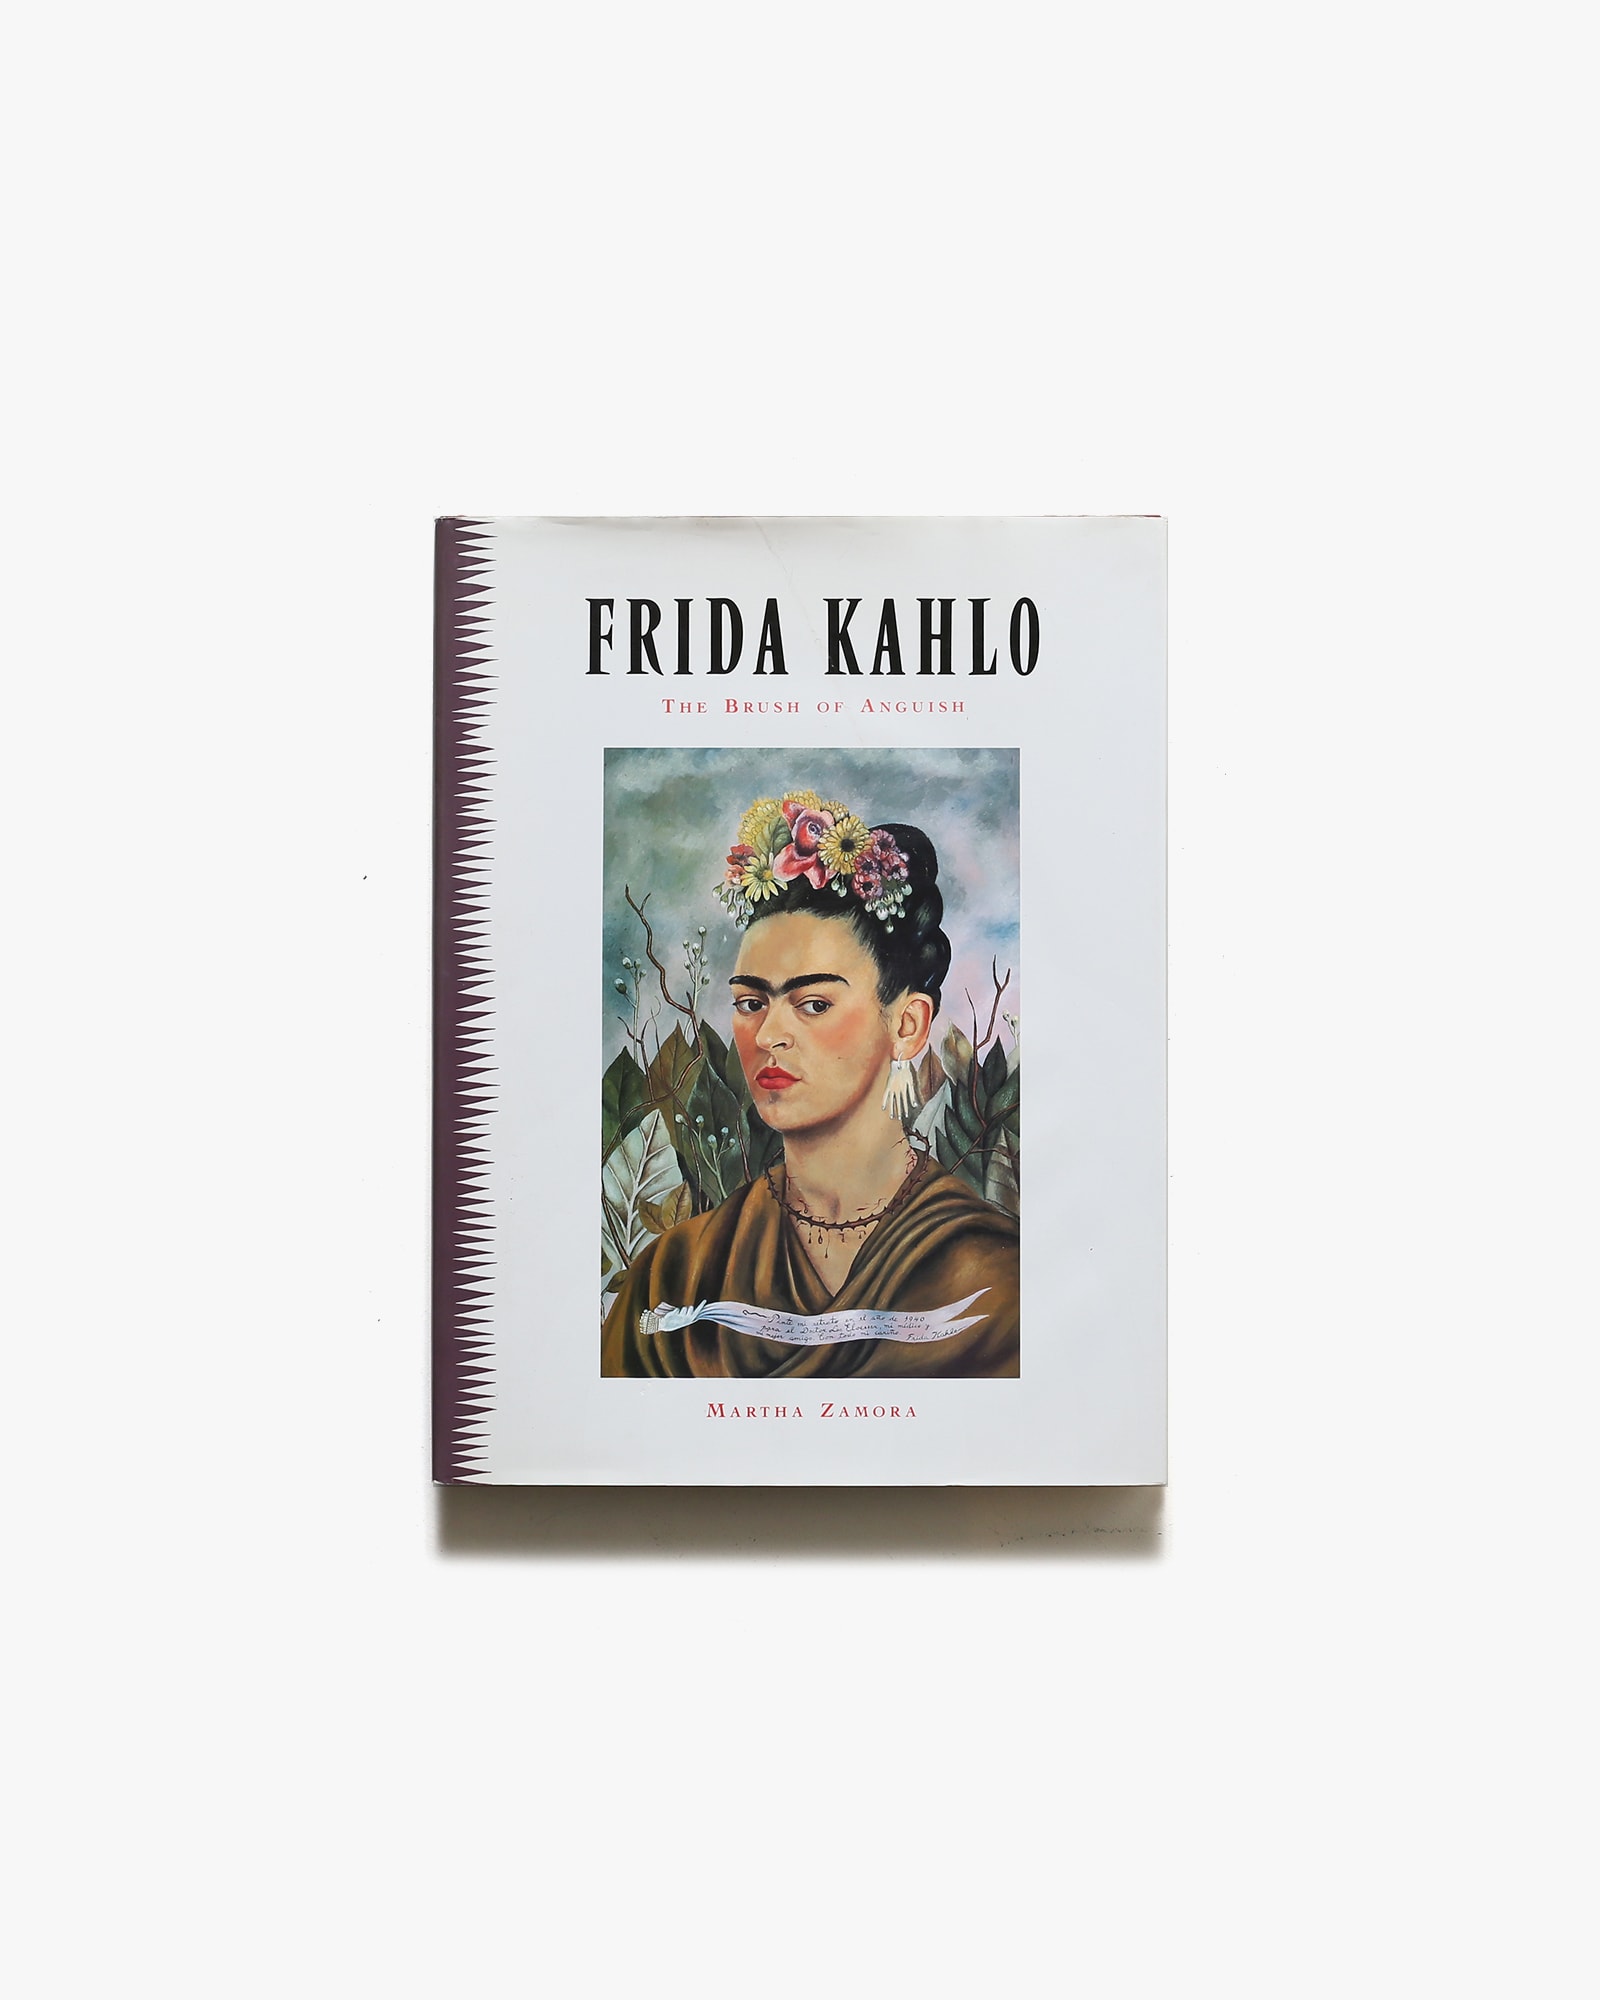 Frida Kahlo: Brush of Anguish